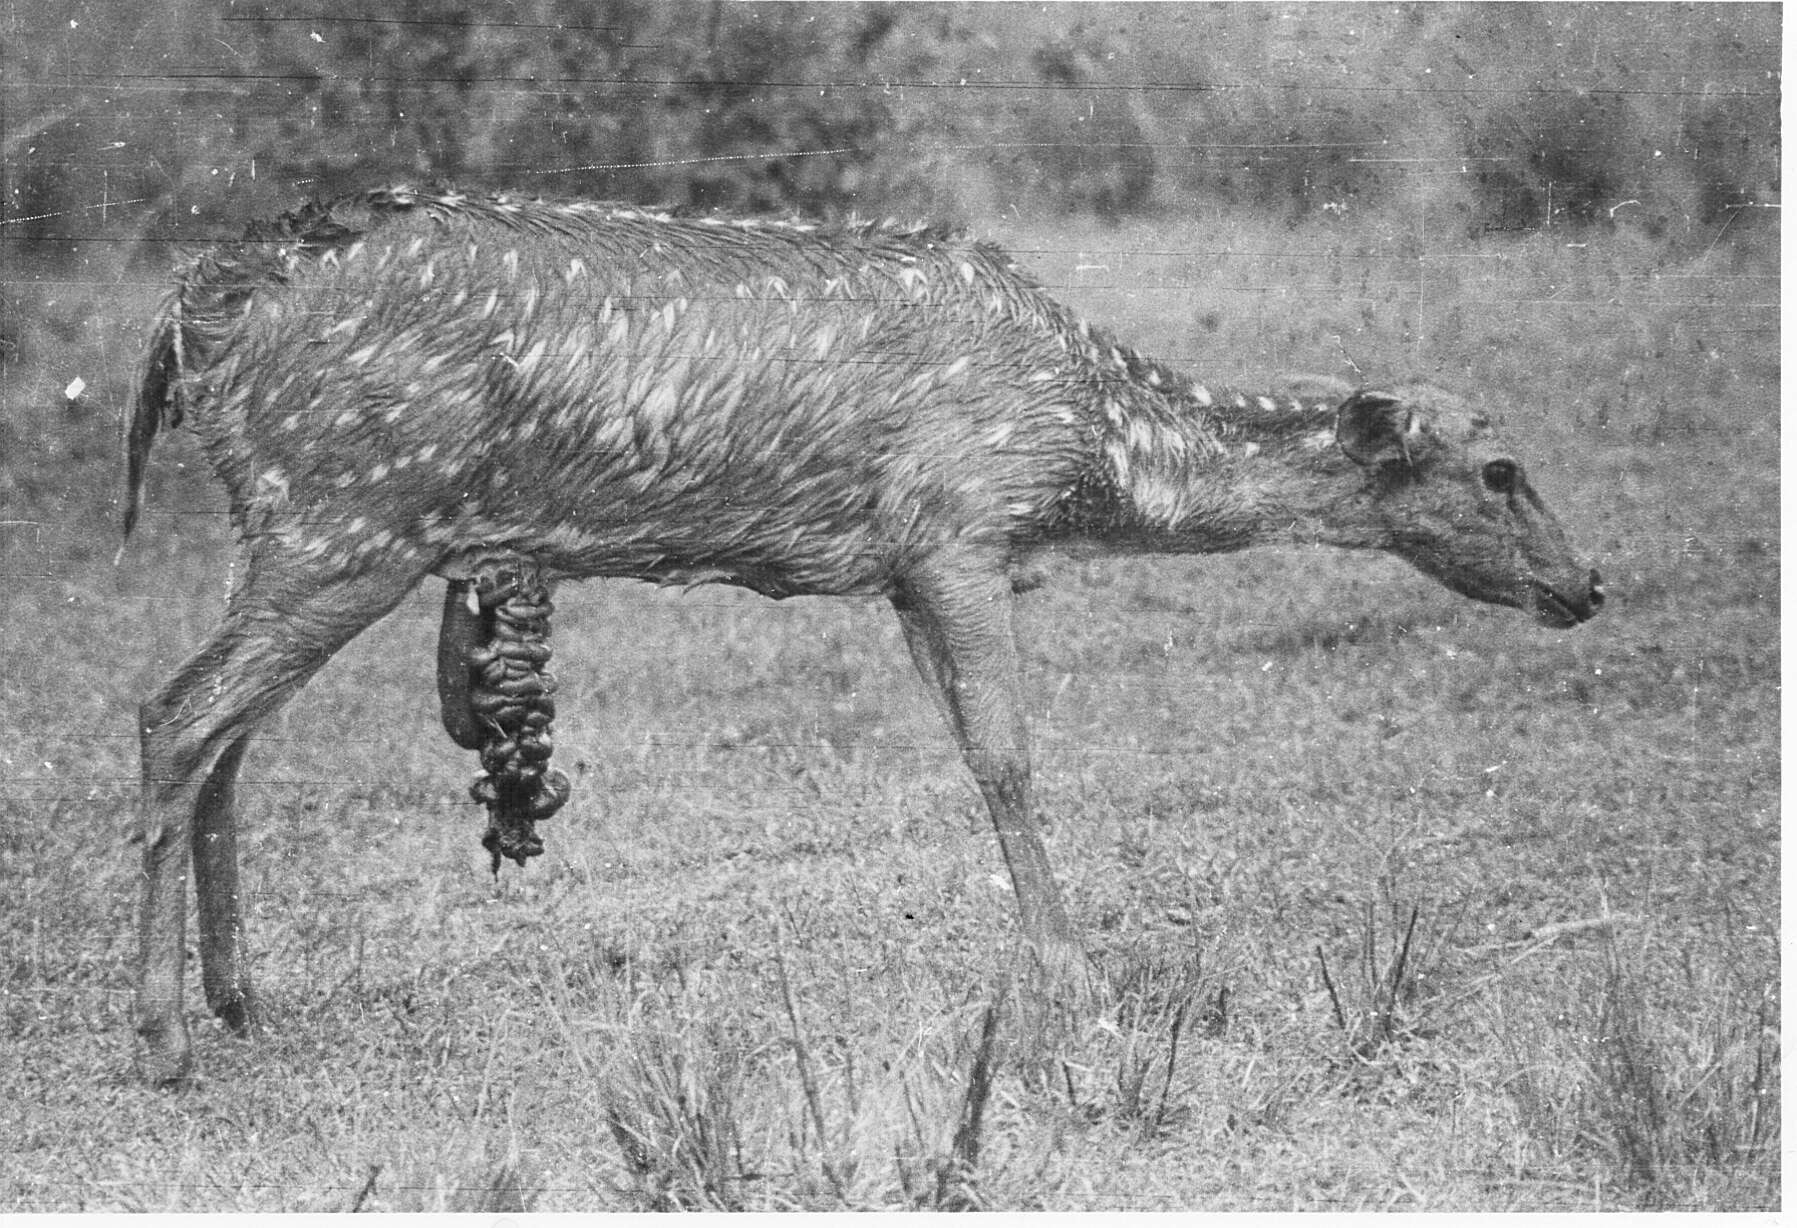 Image of Axis Deer